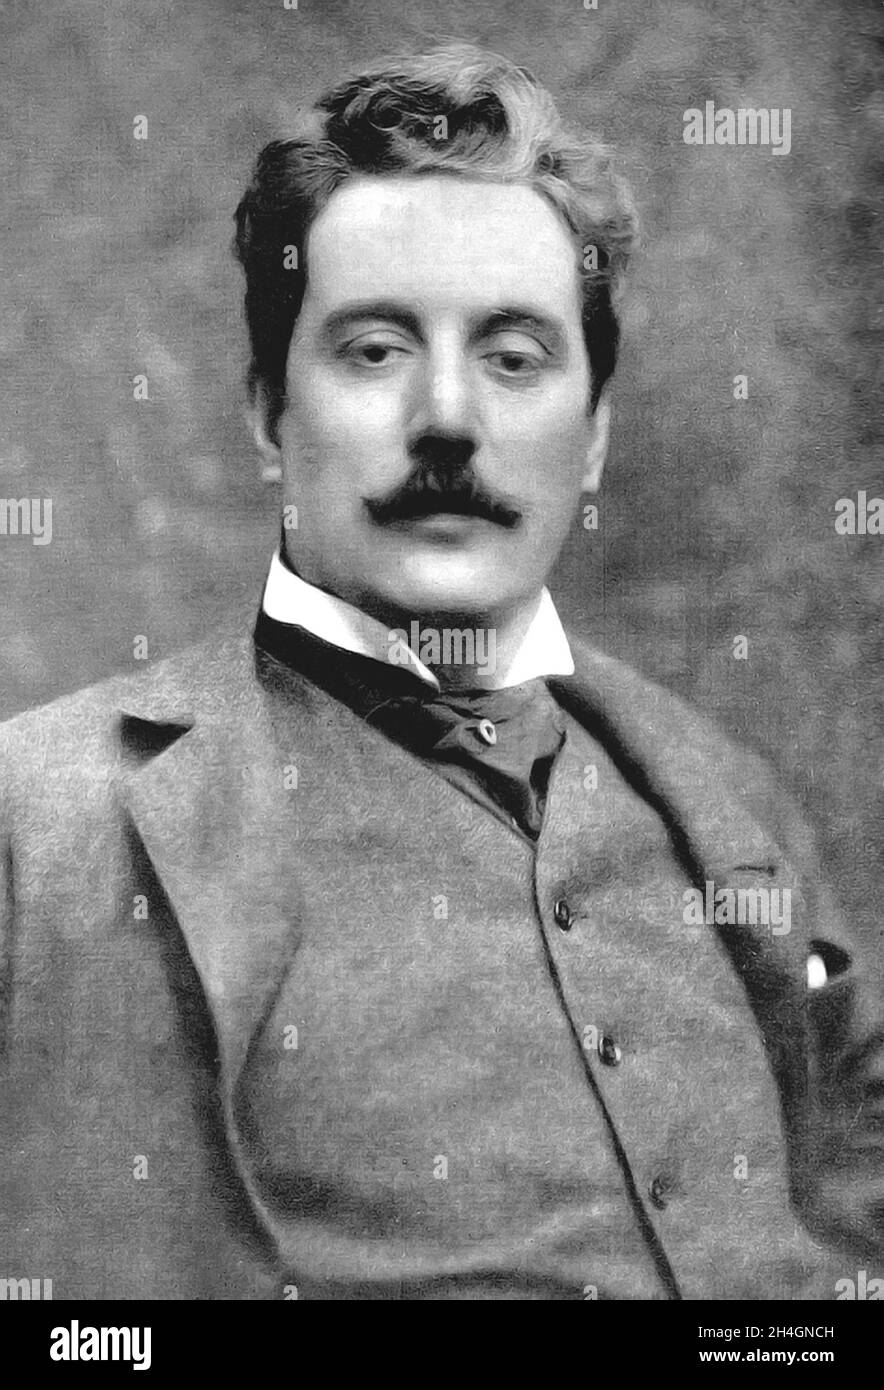 Un portrait du compositeur italien Giacomo Puccini Banque D'Images